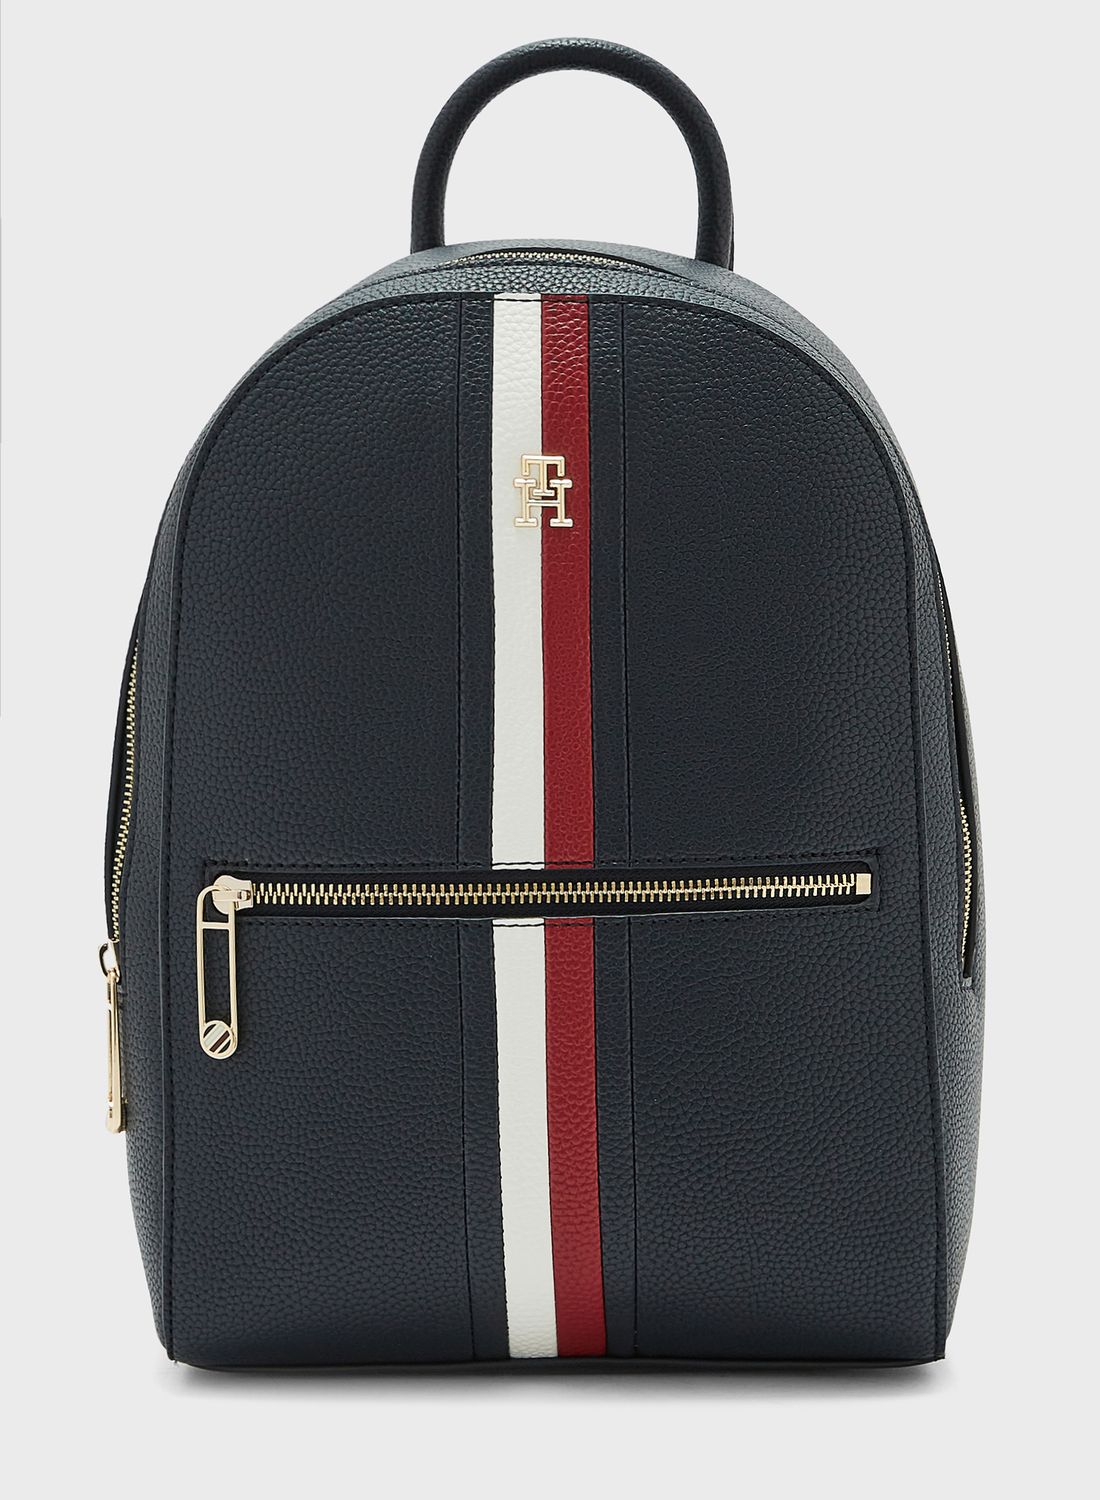 buy-tommy-hilfiger-emblem-top-handle-backpack